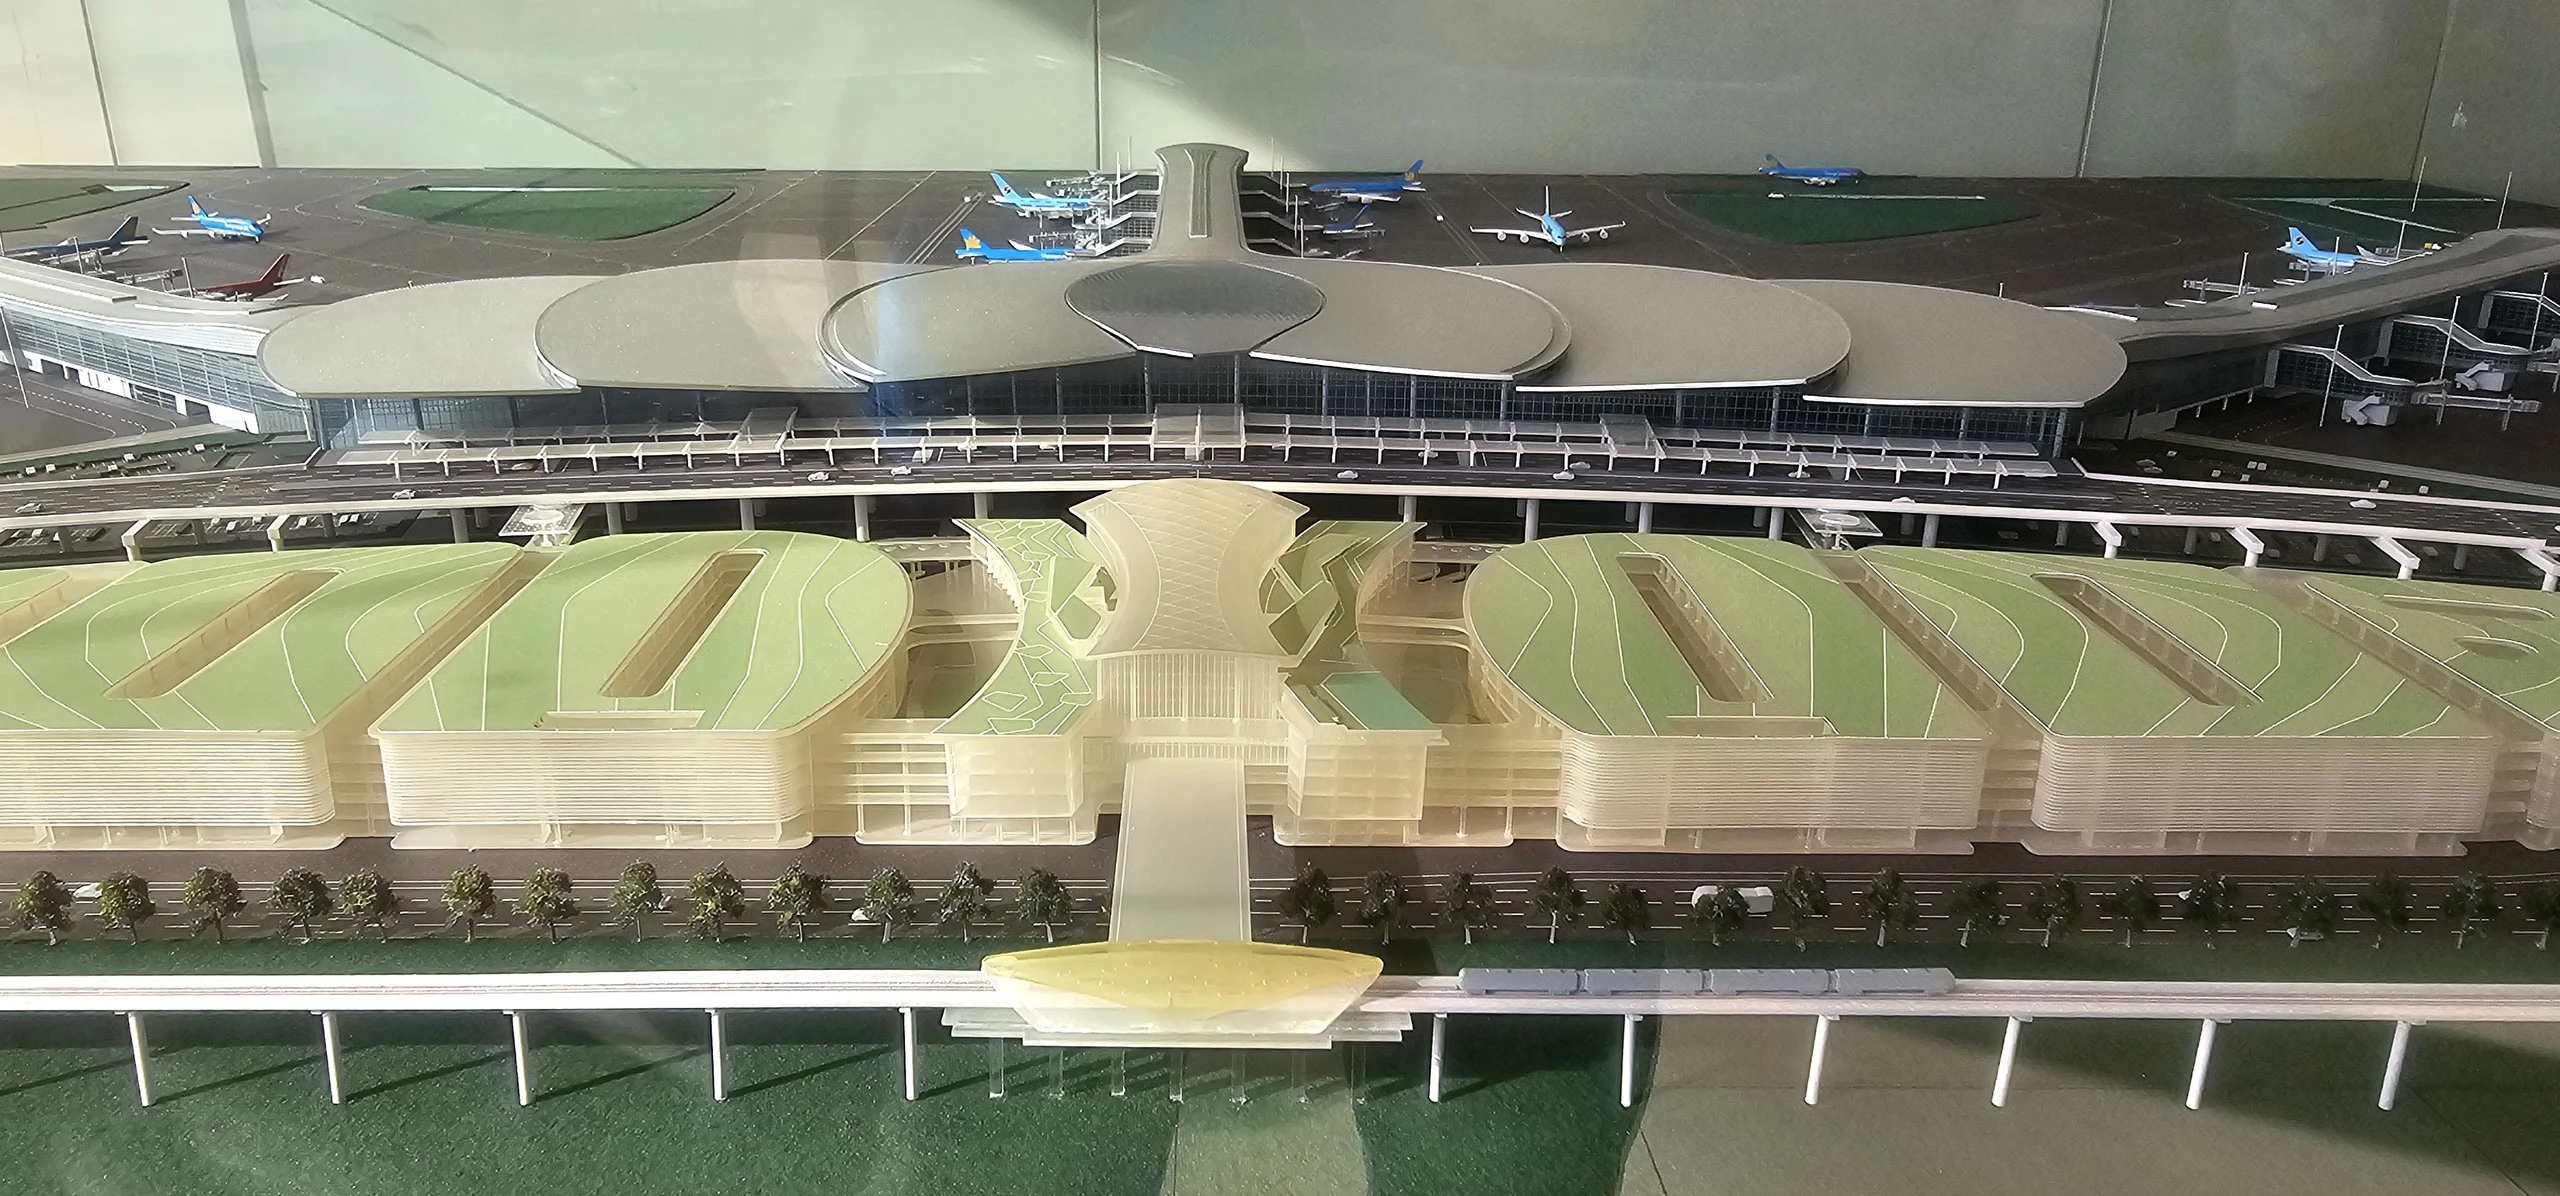 Thi ý tưởng quy hoạch đô thị sân bay Long Thành: Giải nhất 2 tỉ đồng